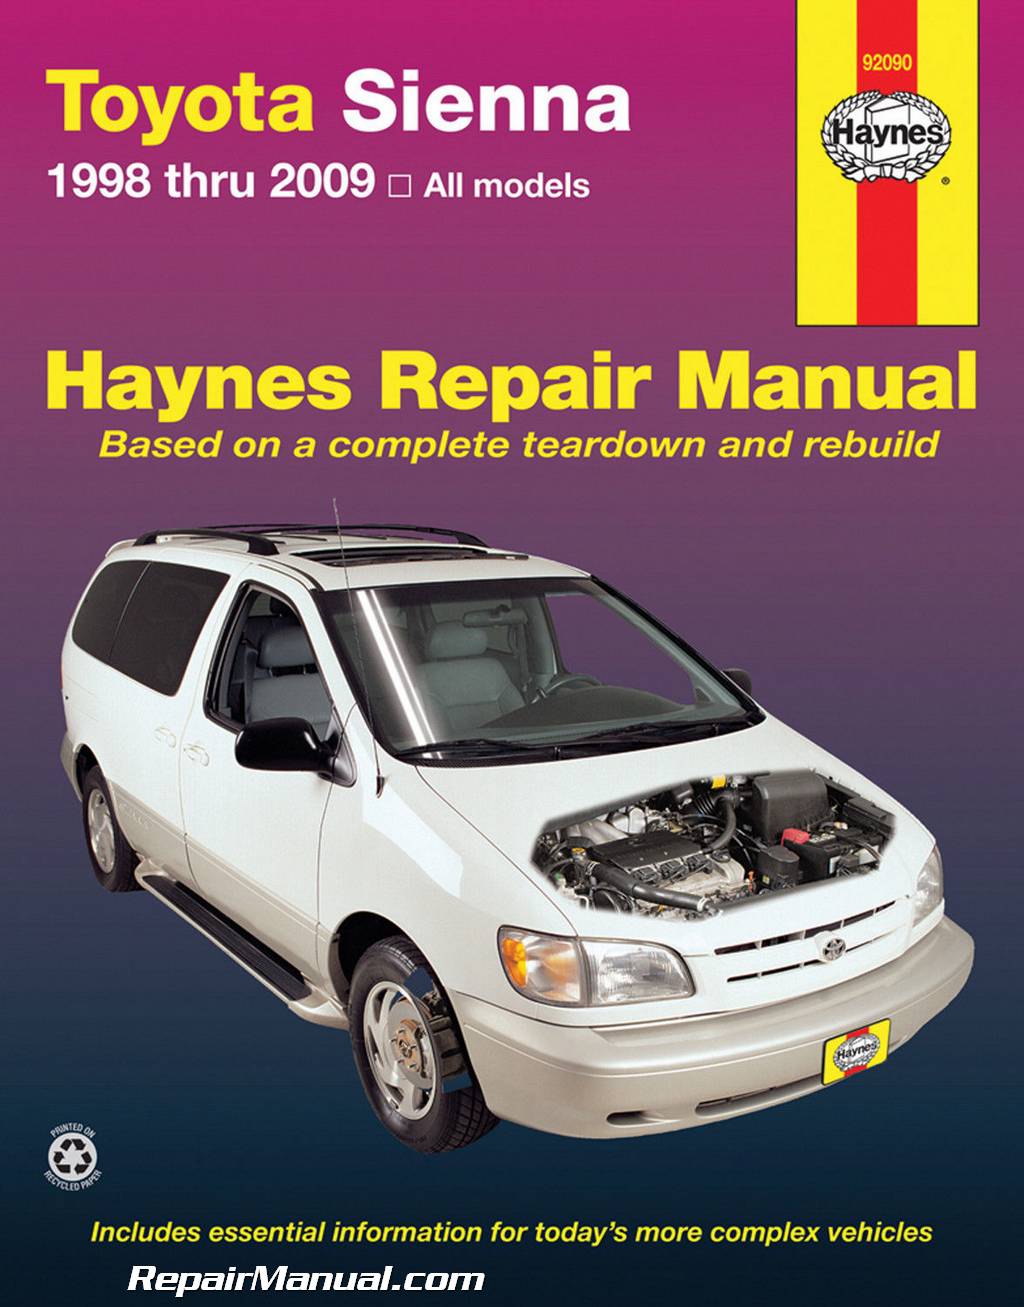 Toyota sienna repair manual